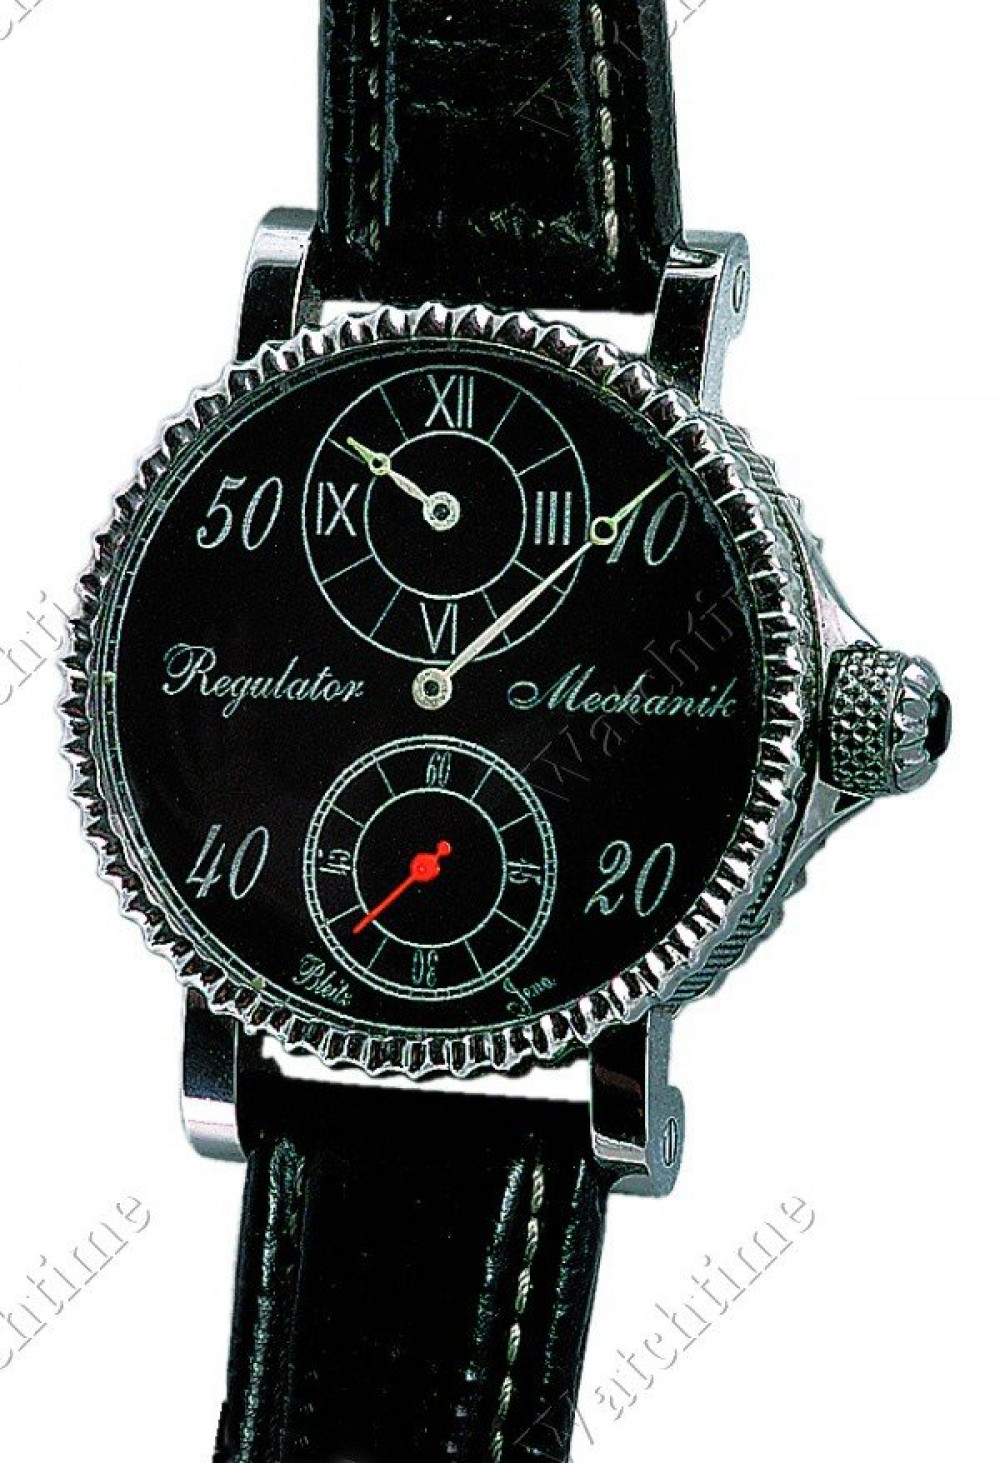 Zegarek firmy Bleitz, model Regulator